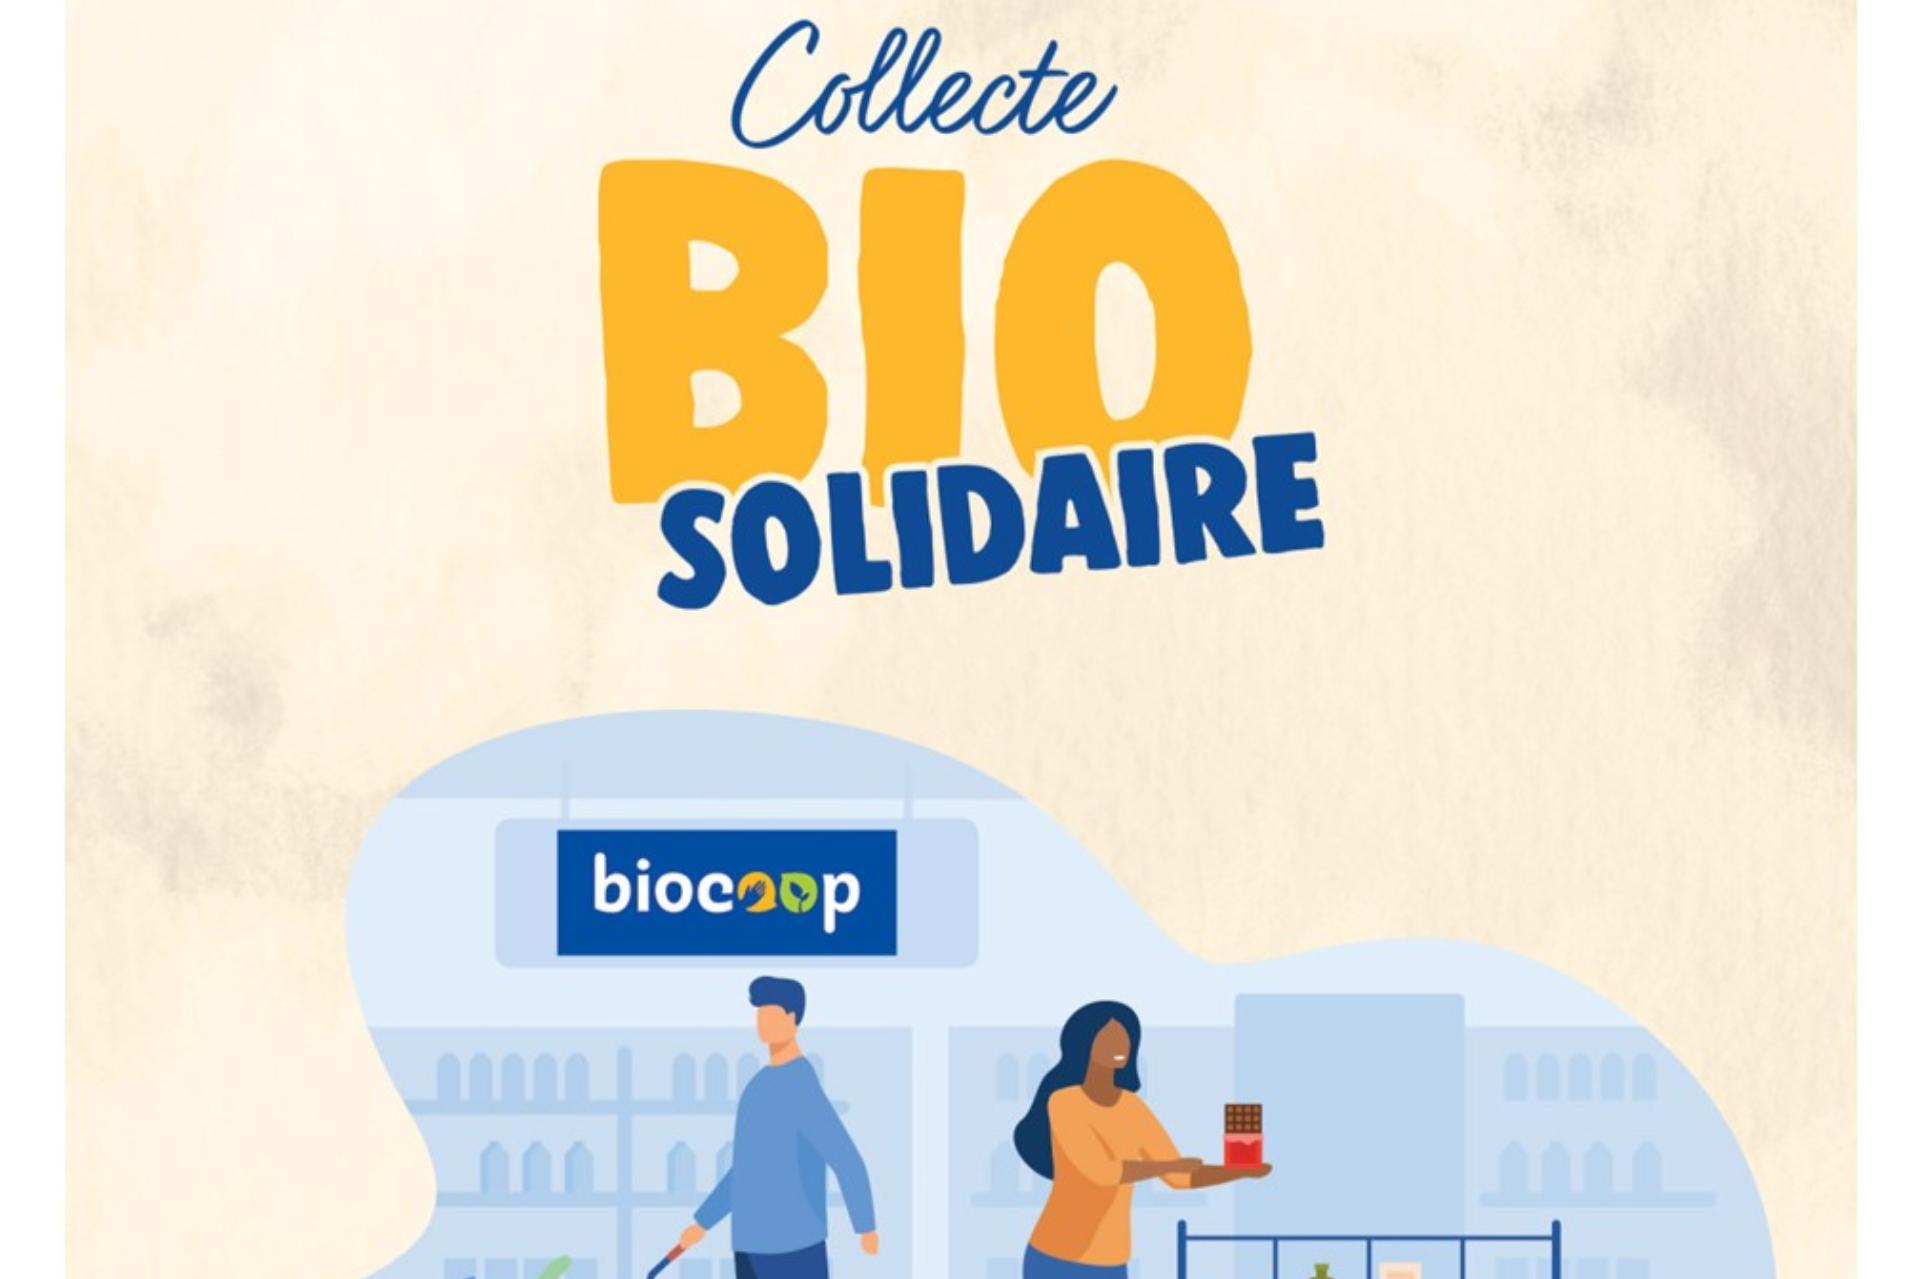 Collecte bio solidaire